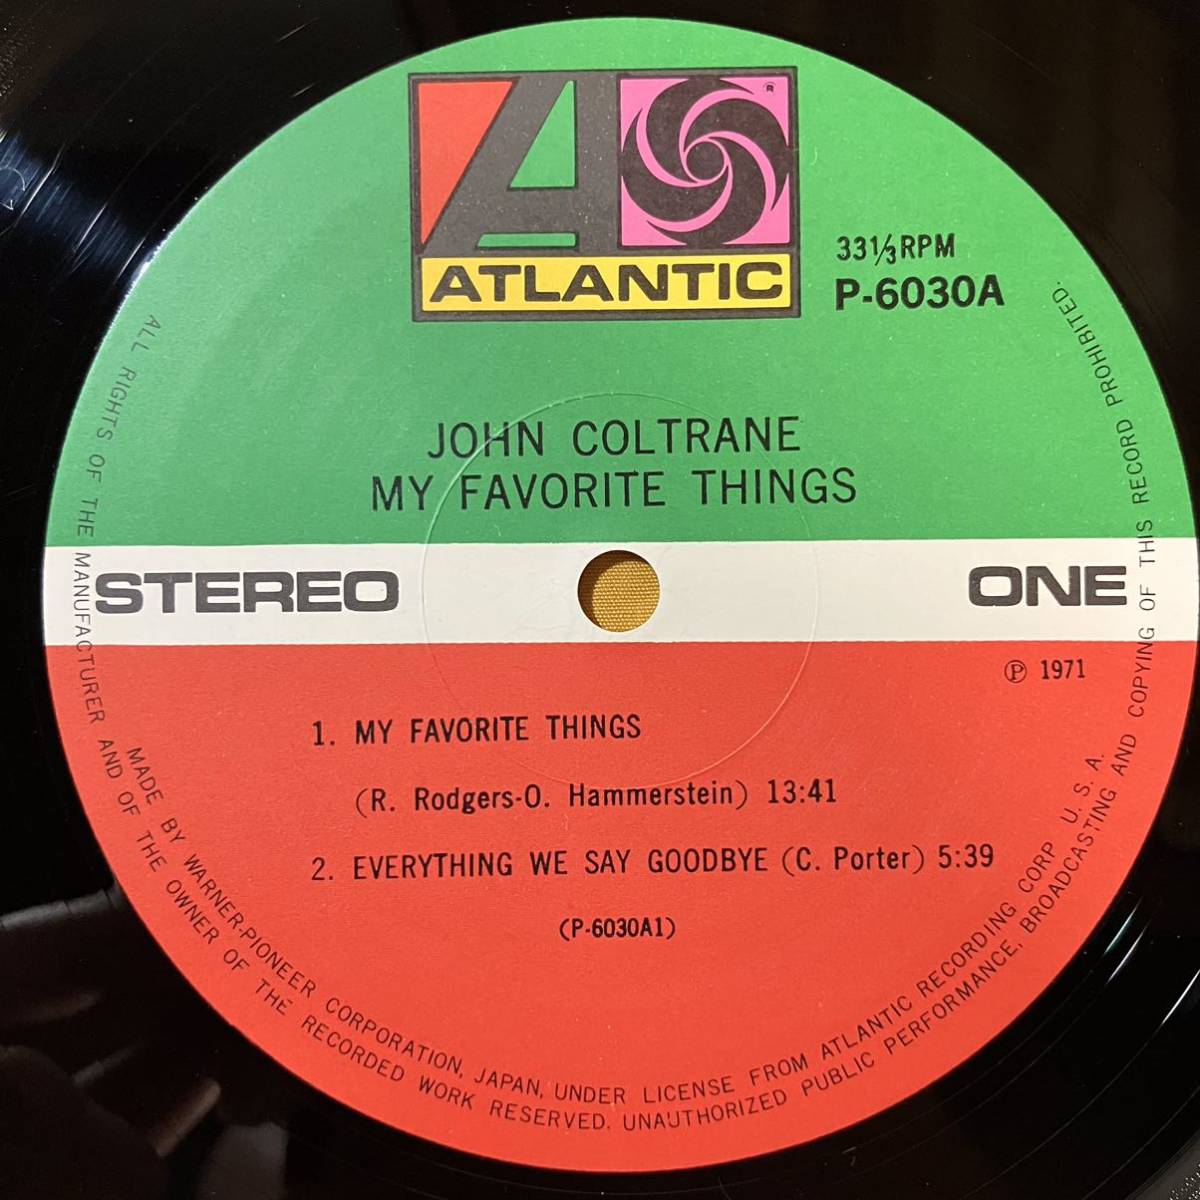 08H ジャズ ジョン・コルトレーン John Coltrane / マイ・フェイヴァ